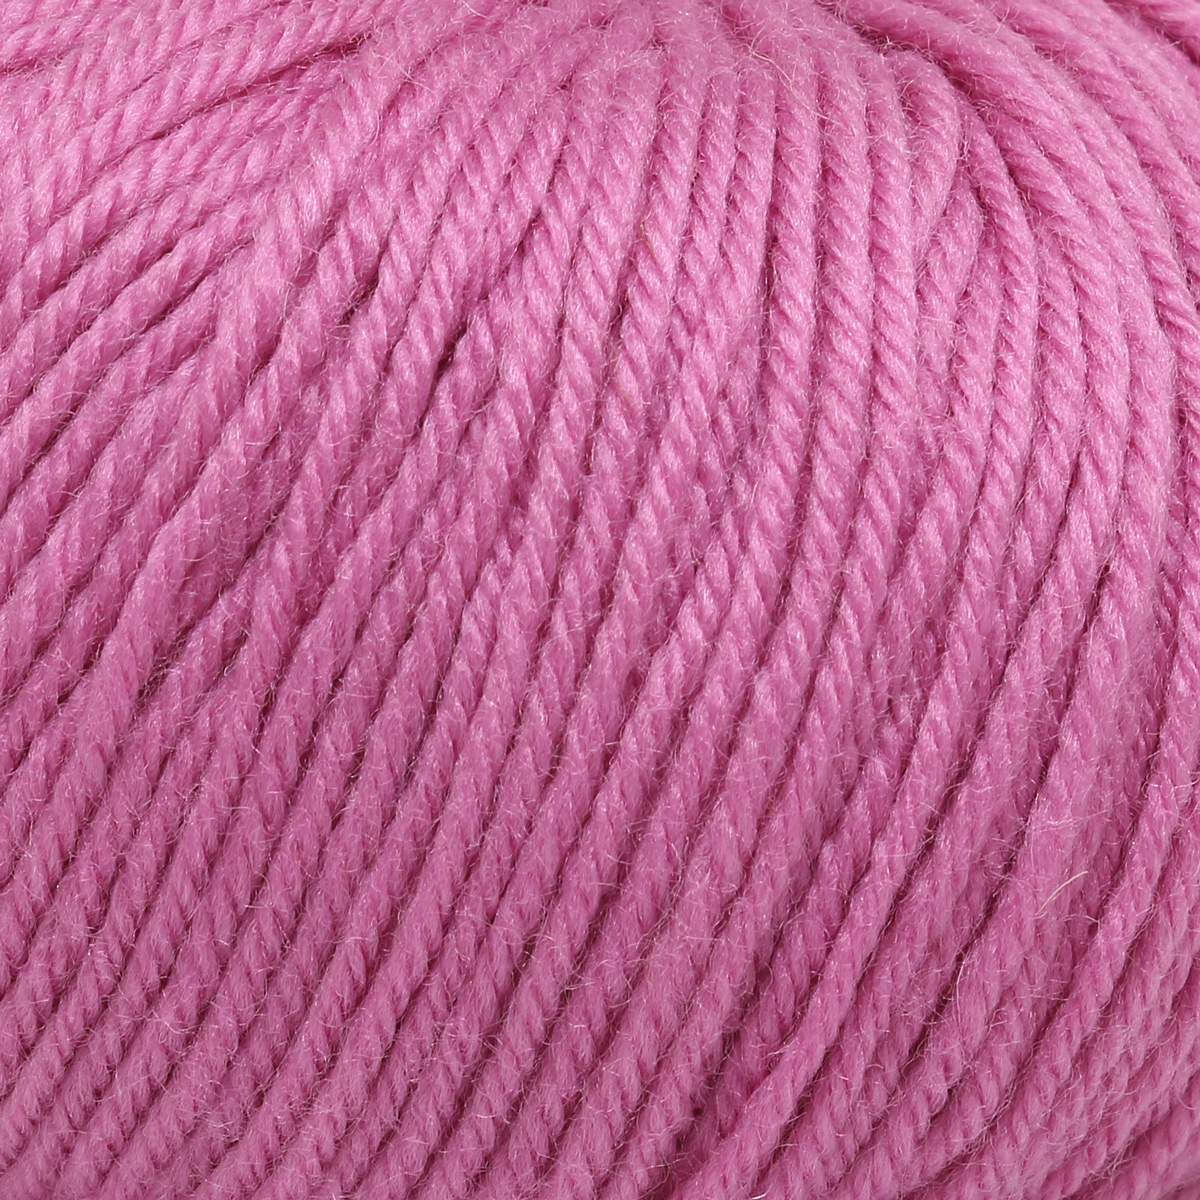 Пряжа для вязания Пехорка детский каприз тёплый 50 гр 125 м мериносовая шерсть фибра 11 ярко-розовый 10 мотков - фото 4